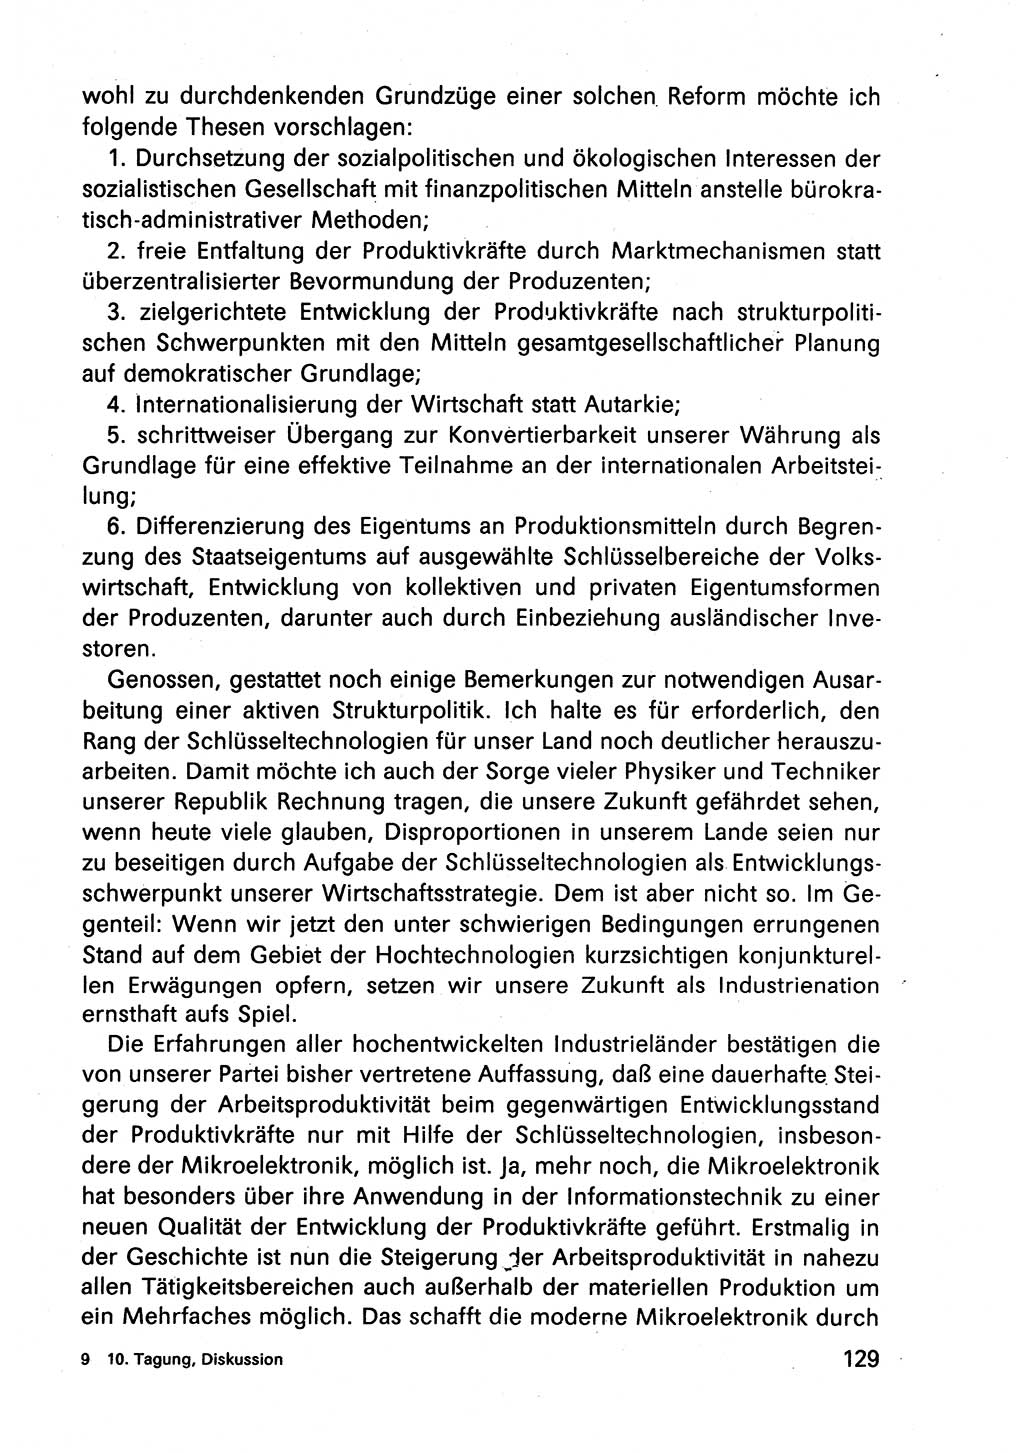 Diskussionsbeiträge, 10. Tagung des ZK (Zentralkomitee) der SED (Sozialistische Einheitspartei Deutschlands) [Deutsche Demokratische Republik (DDR)] 1989, Seite 129 (Disk.-Beitr. 10. Tg. ZK SED DDR 1989, S. 129)